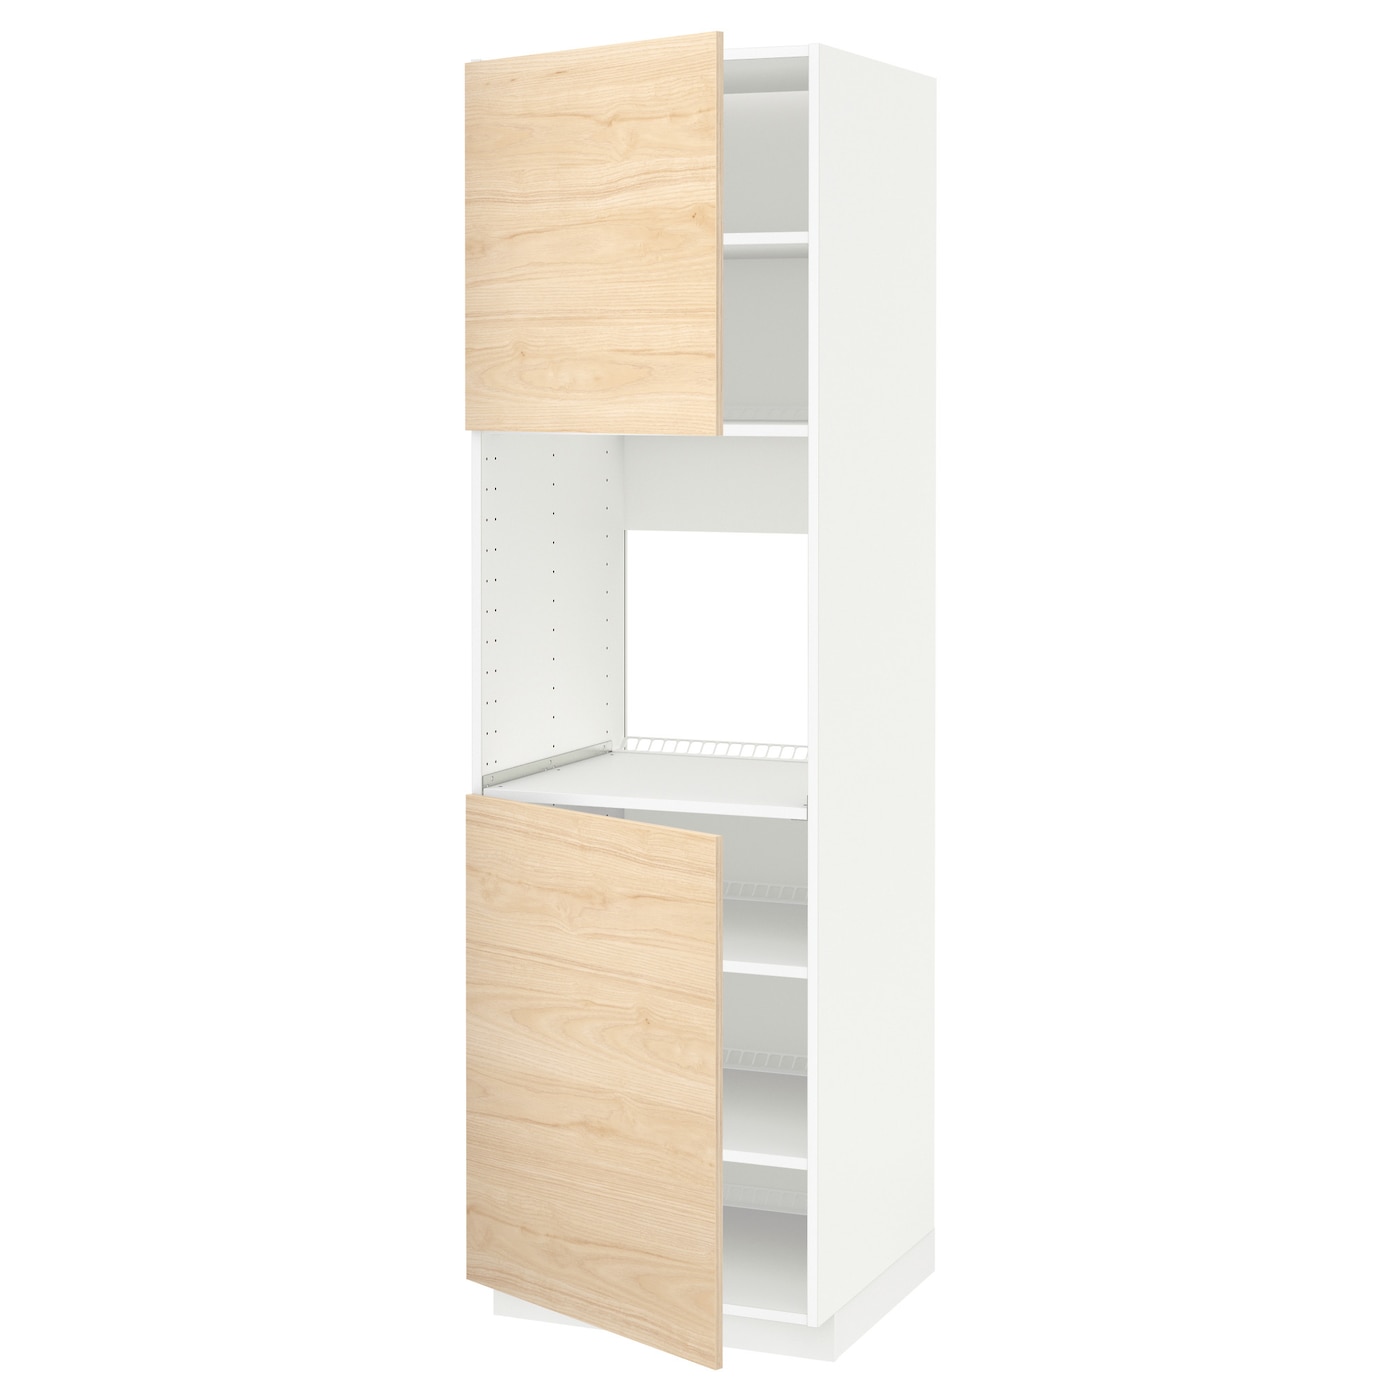 Высокий кухонный шкаф с полками - IKEA METOD/МЕТОД ИКЕА, 200х60х60 см, белый/под беленый дуб